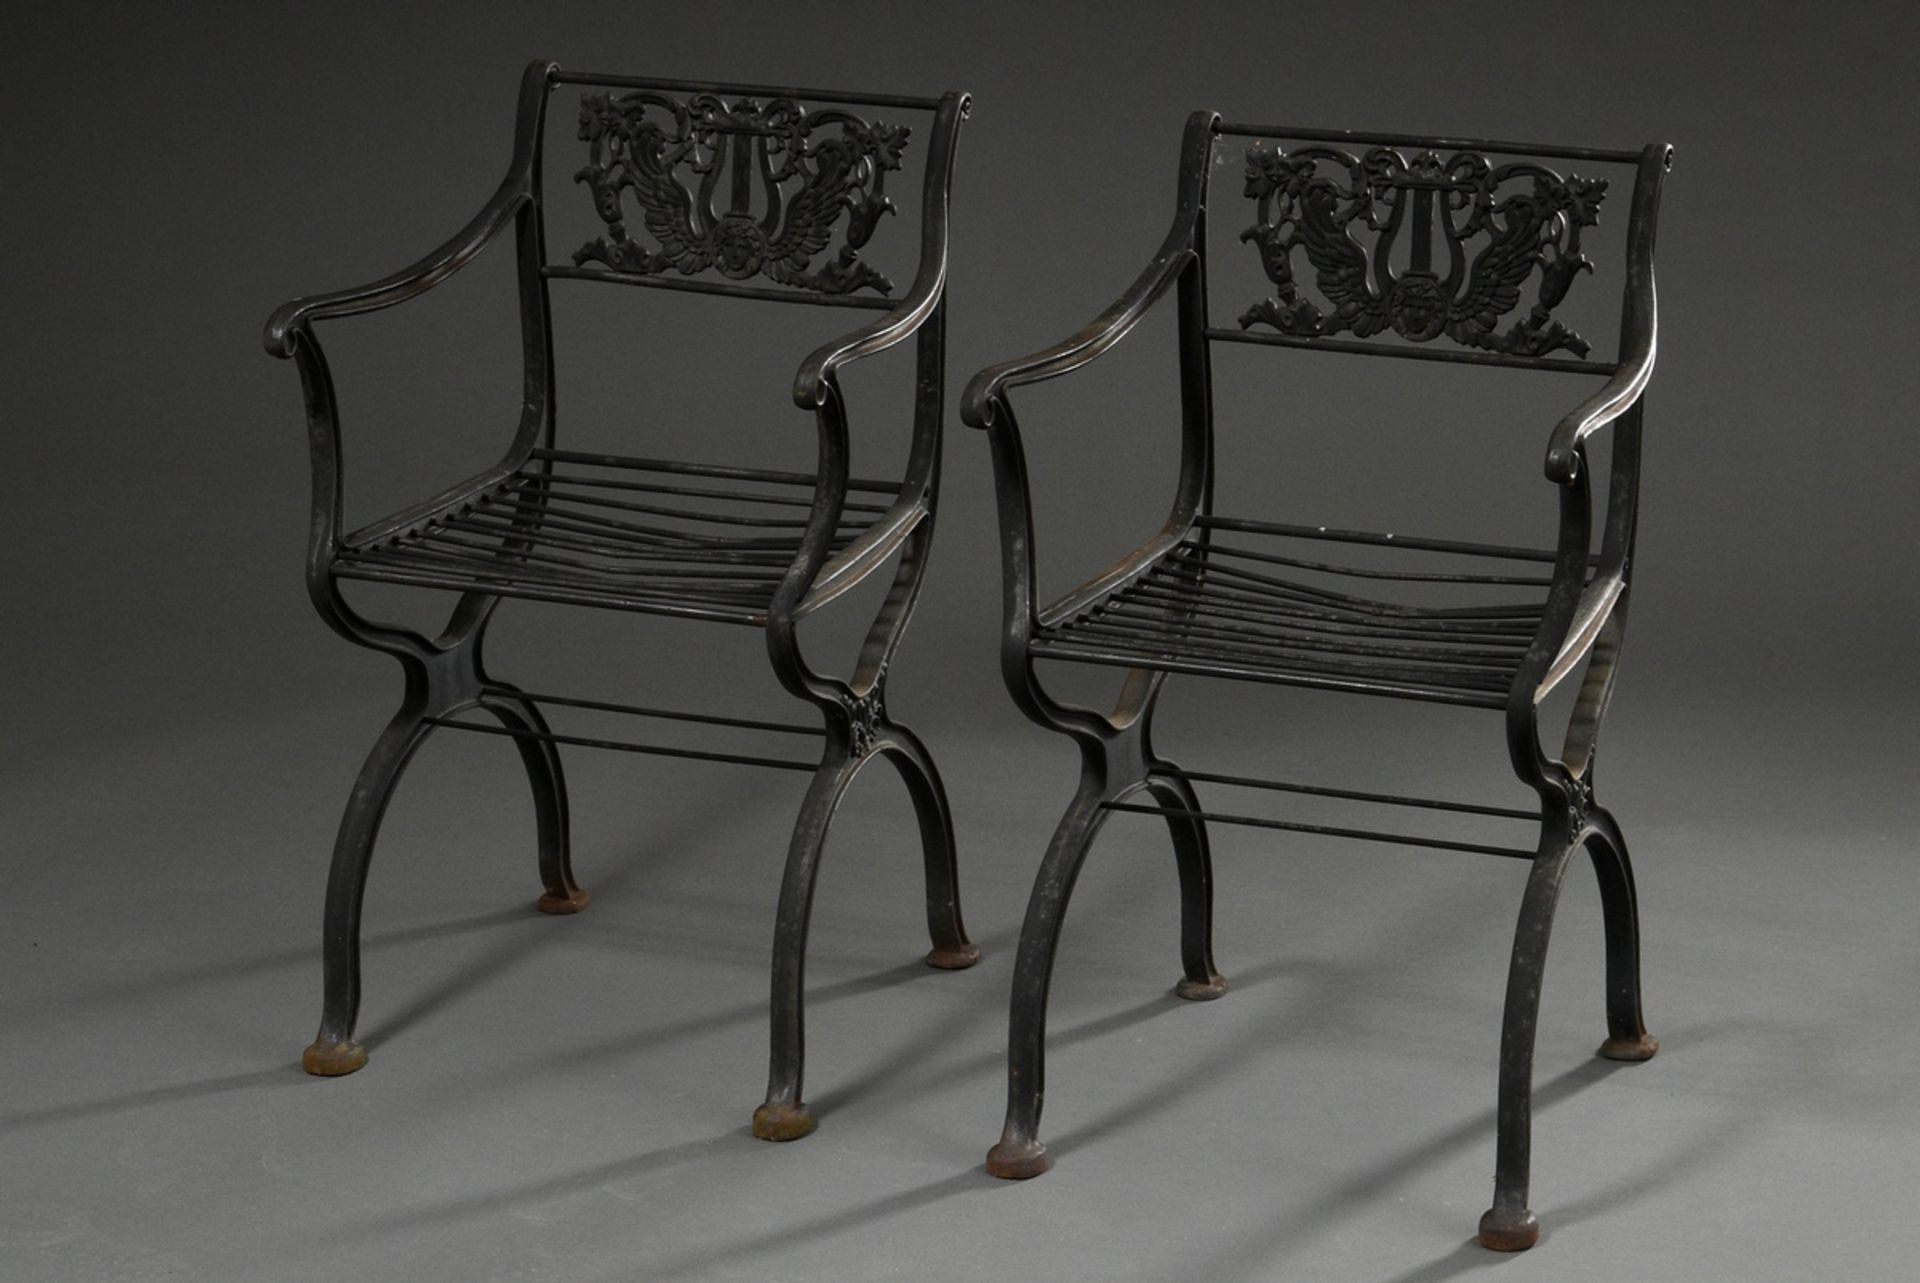 2 Classicist garden chairs with simple cheek frame and backrest "Geflügelte Lyra mit Medusenhaupt u